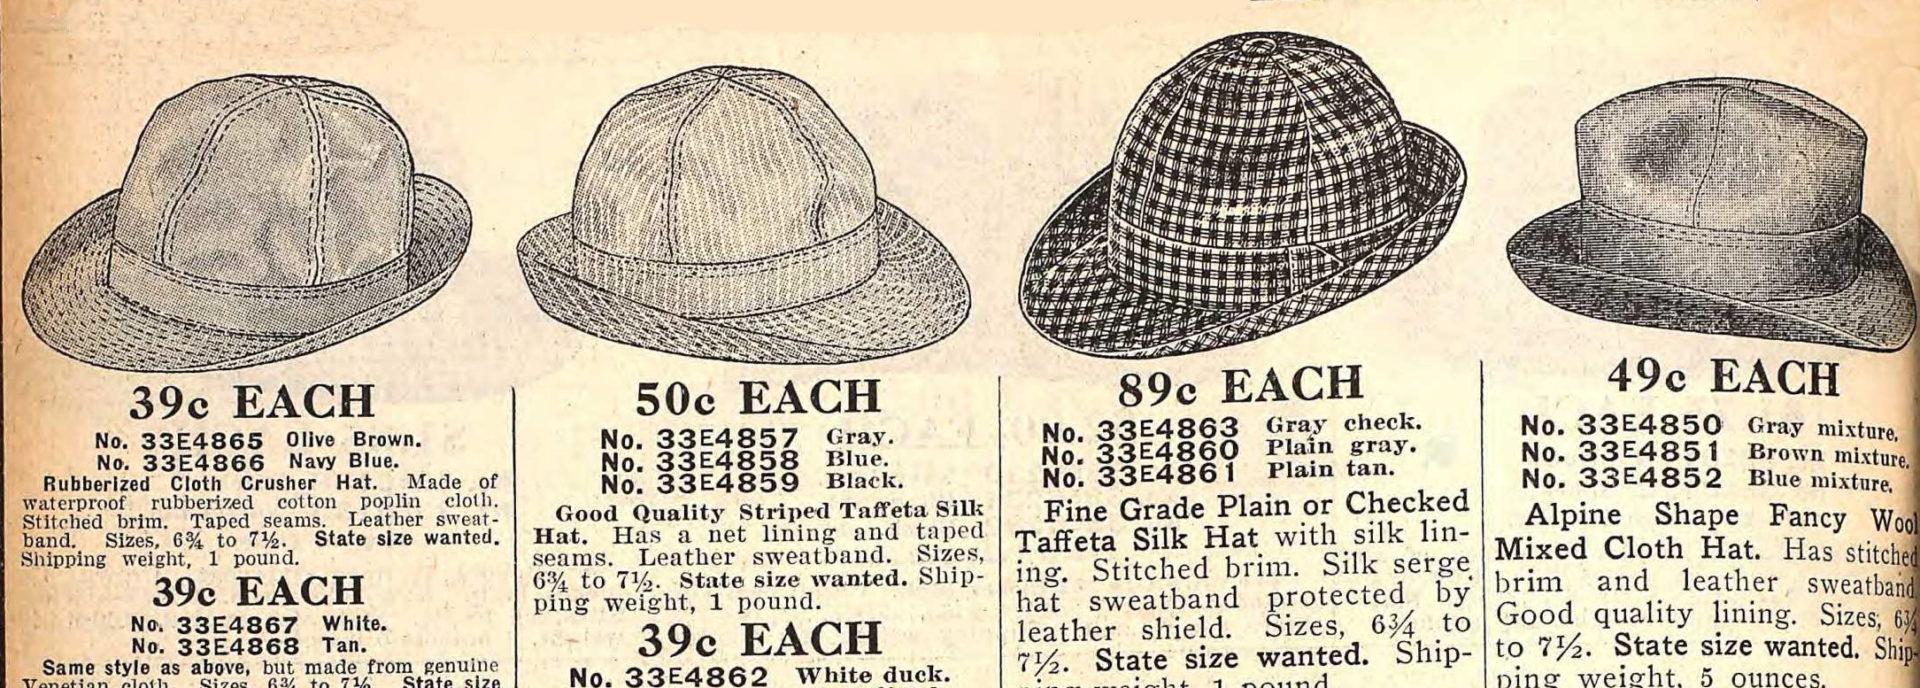 1916 men's cloth hats